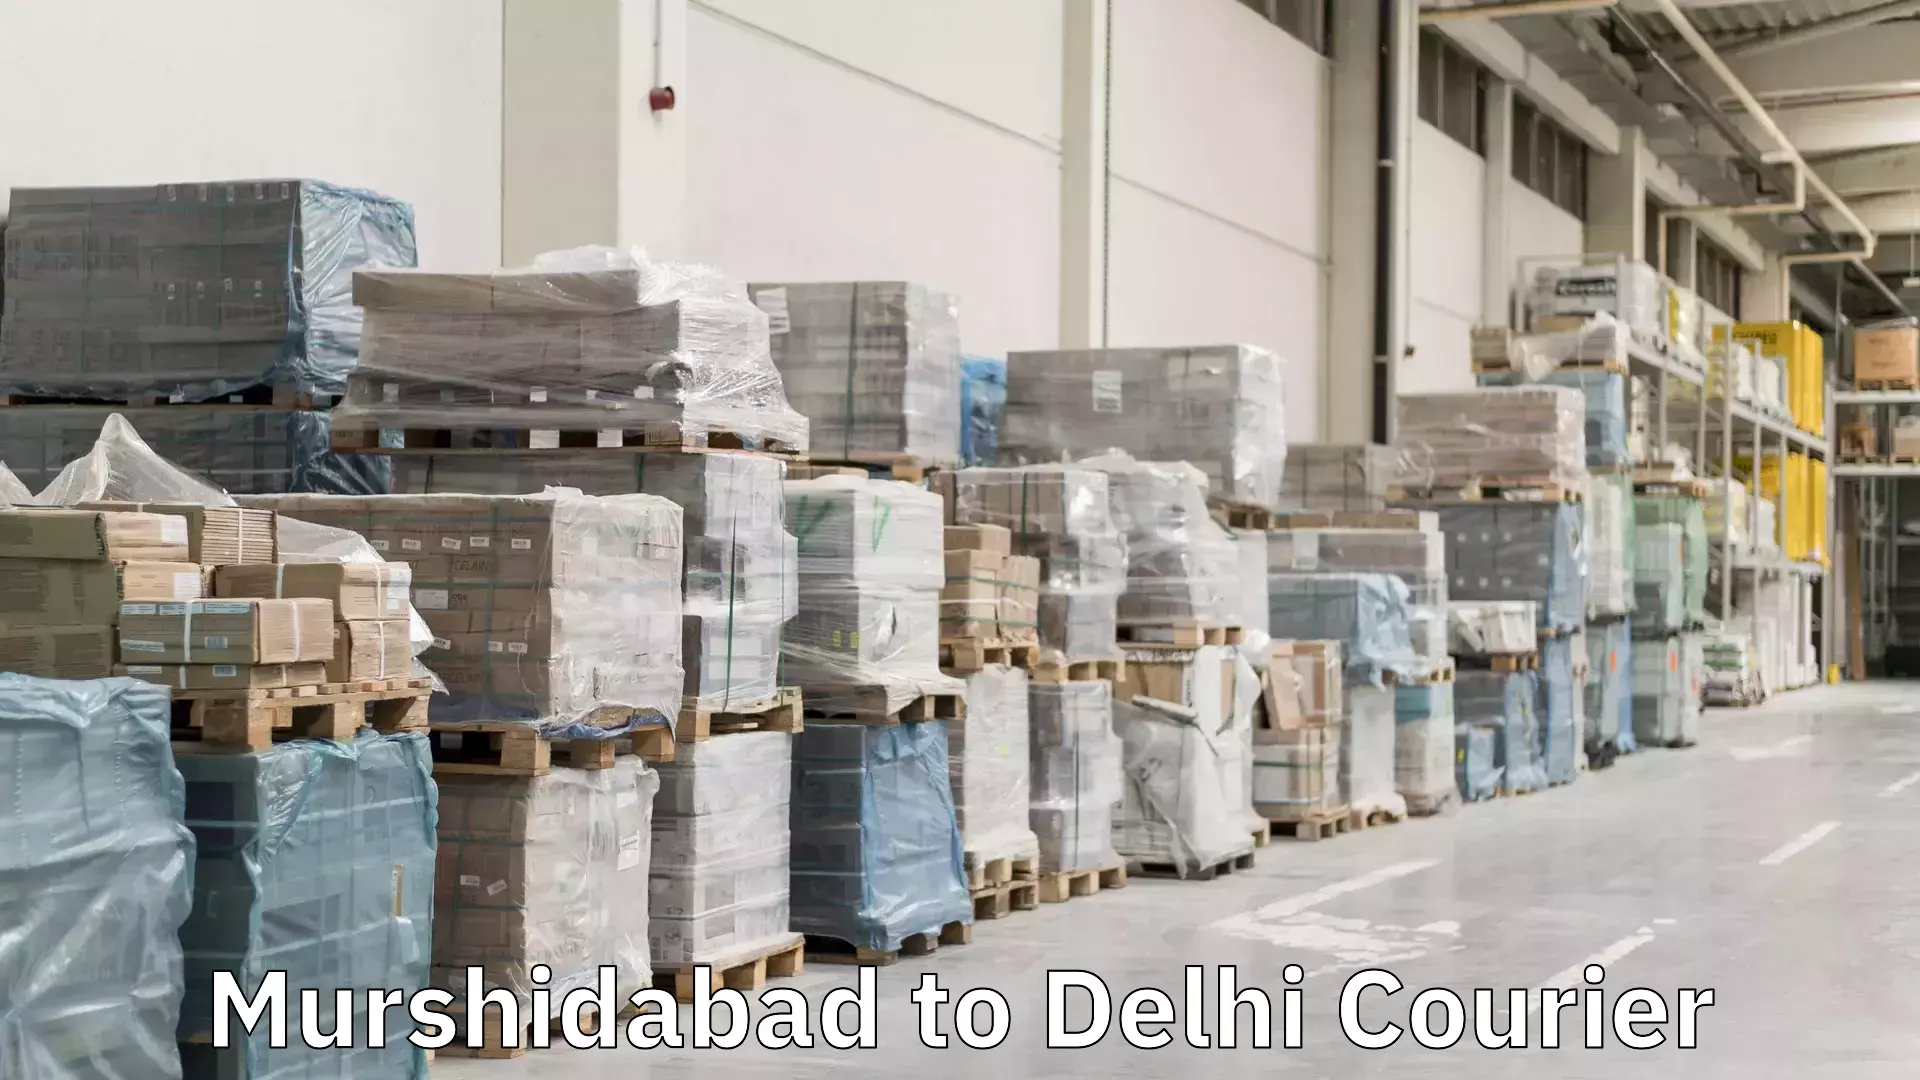 Global courier networks Murshidabad to Delhi